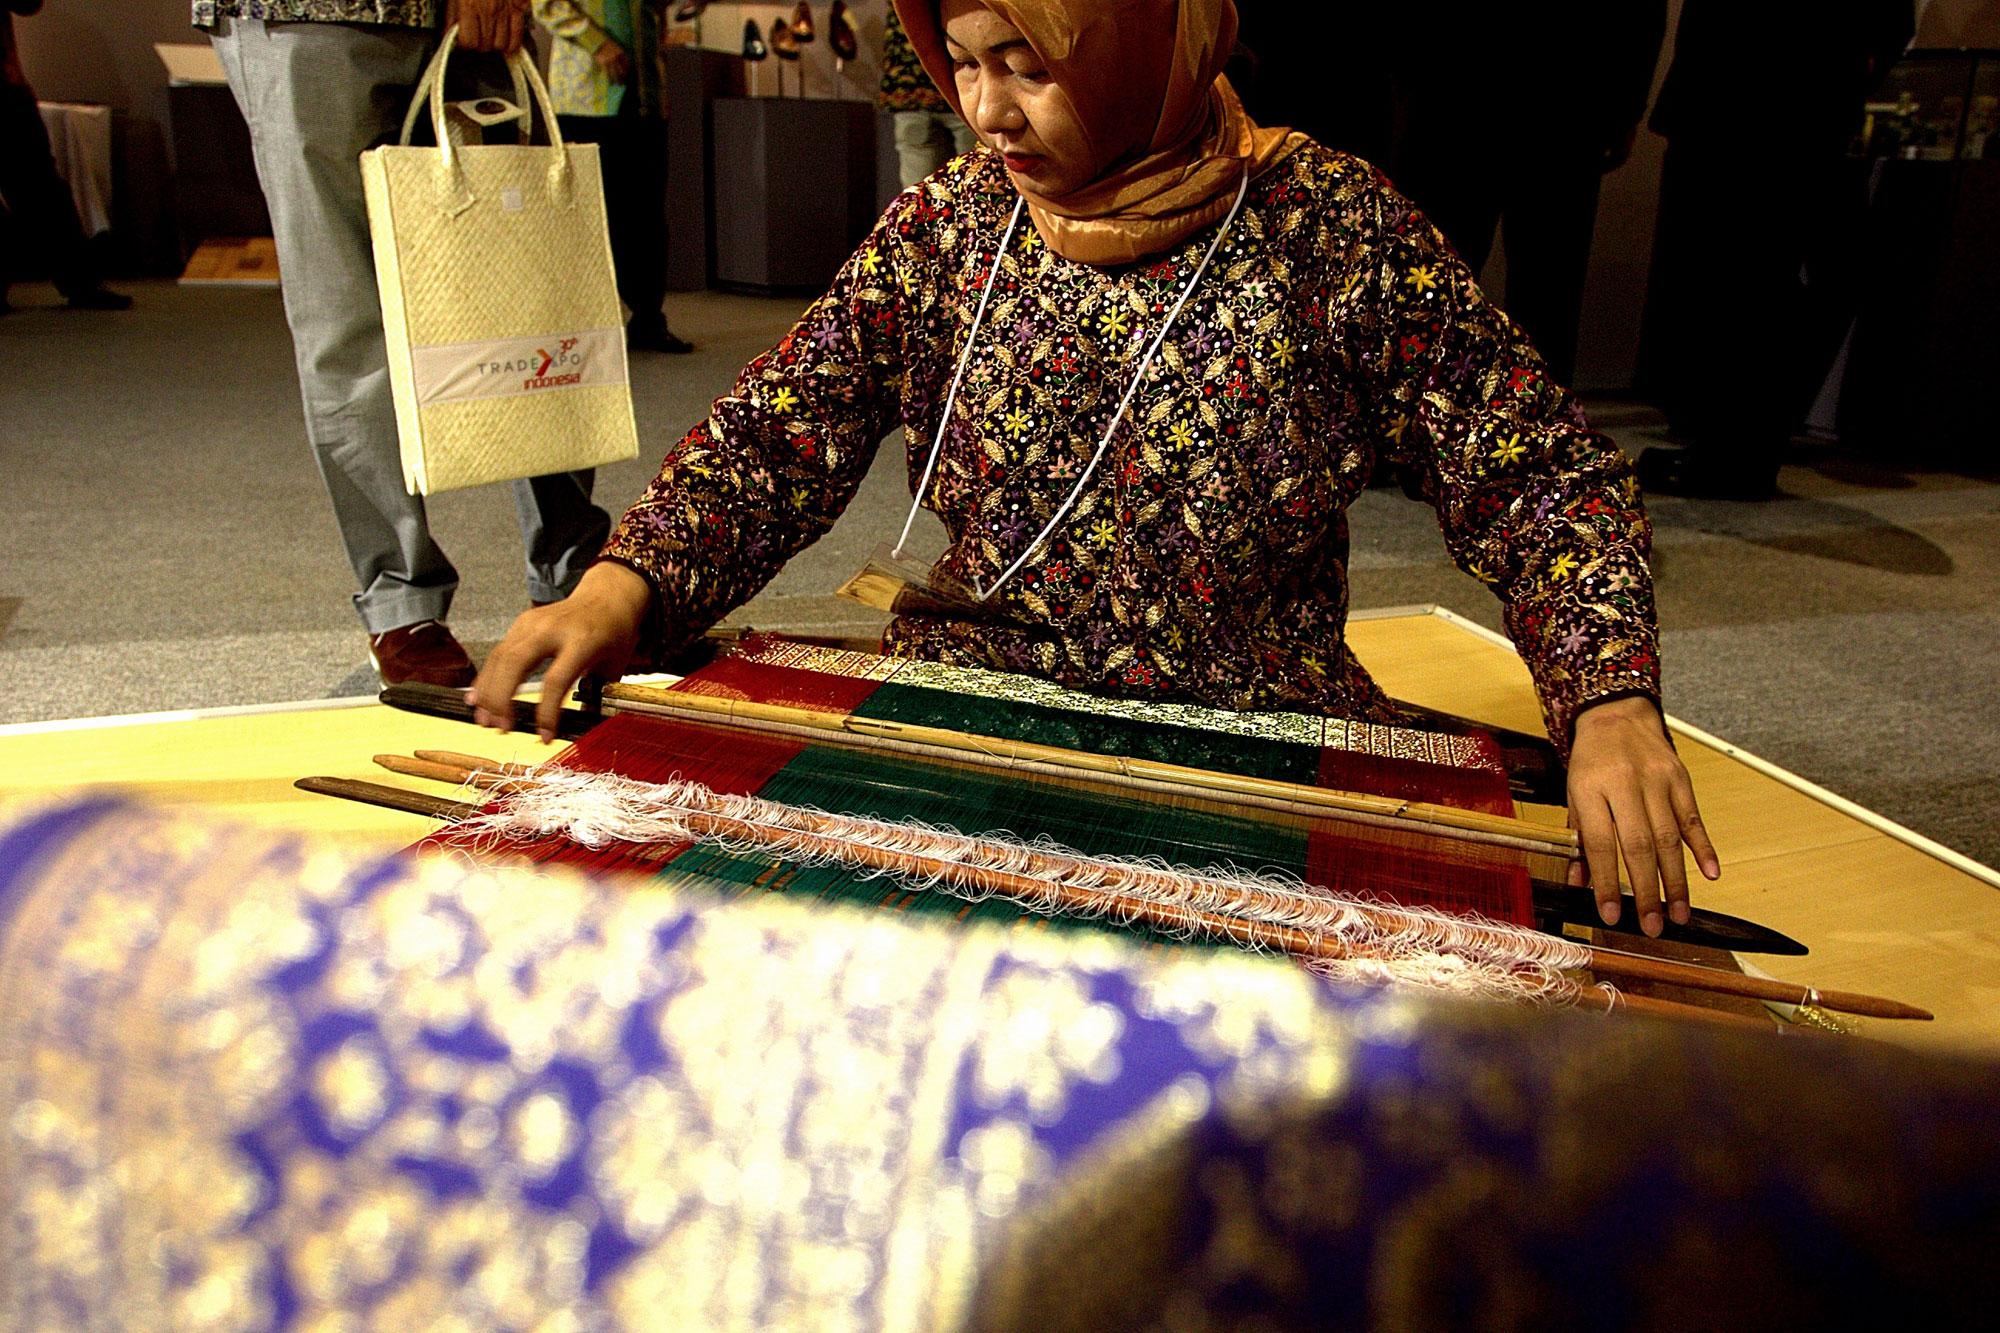 Pengunjung memperhatikan produk kain tenun di salah satu gerai peserta pameran Trade Expo Indonesia ke-30 Tahun 2015 di Arena Pekan Raya Jakarta, Kemayoran, Jakarta, Rabu (21/10). Pameran tahunan yang menampilkan berbagai produk Indonesia berkualitas eksp